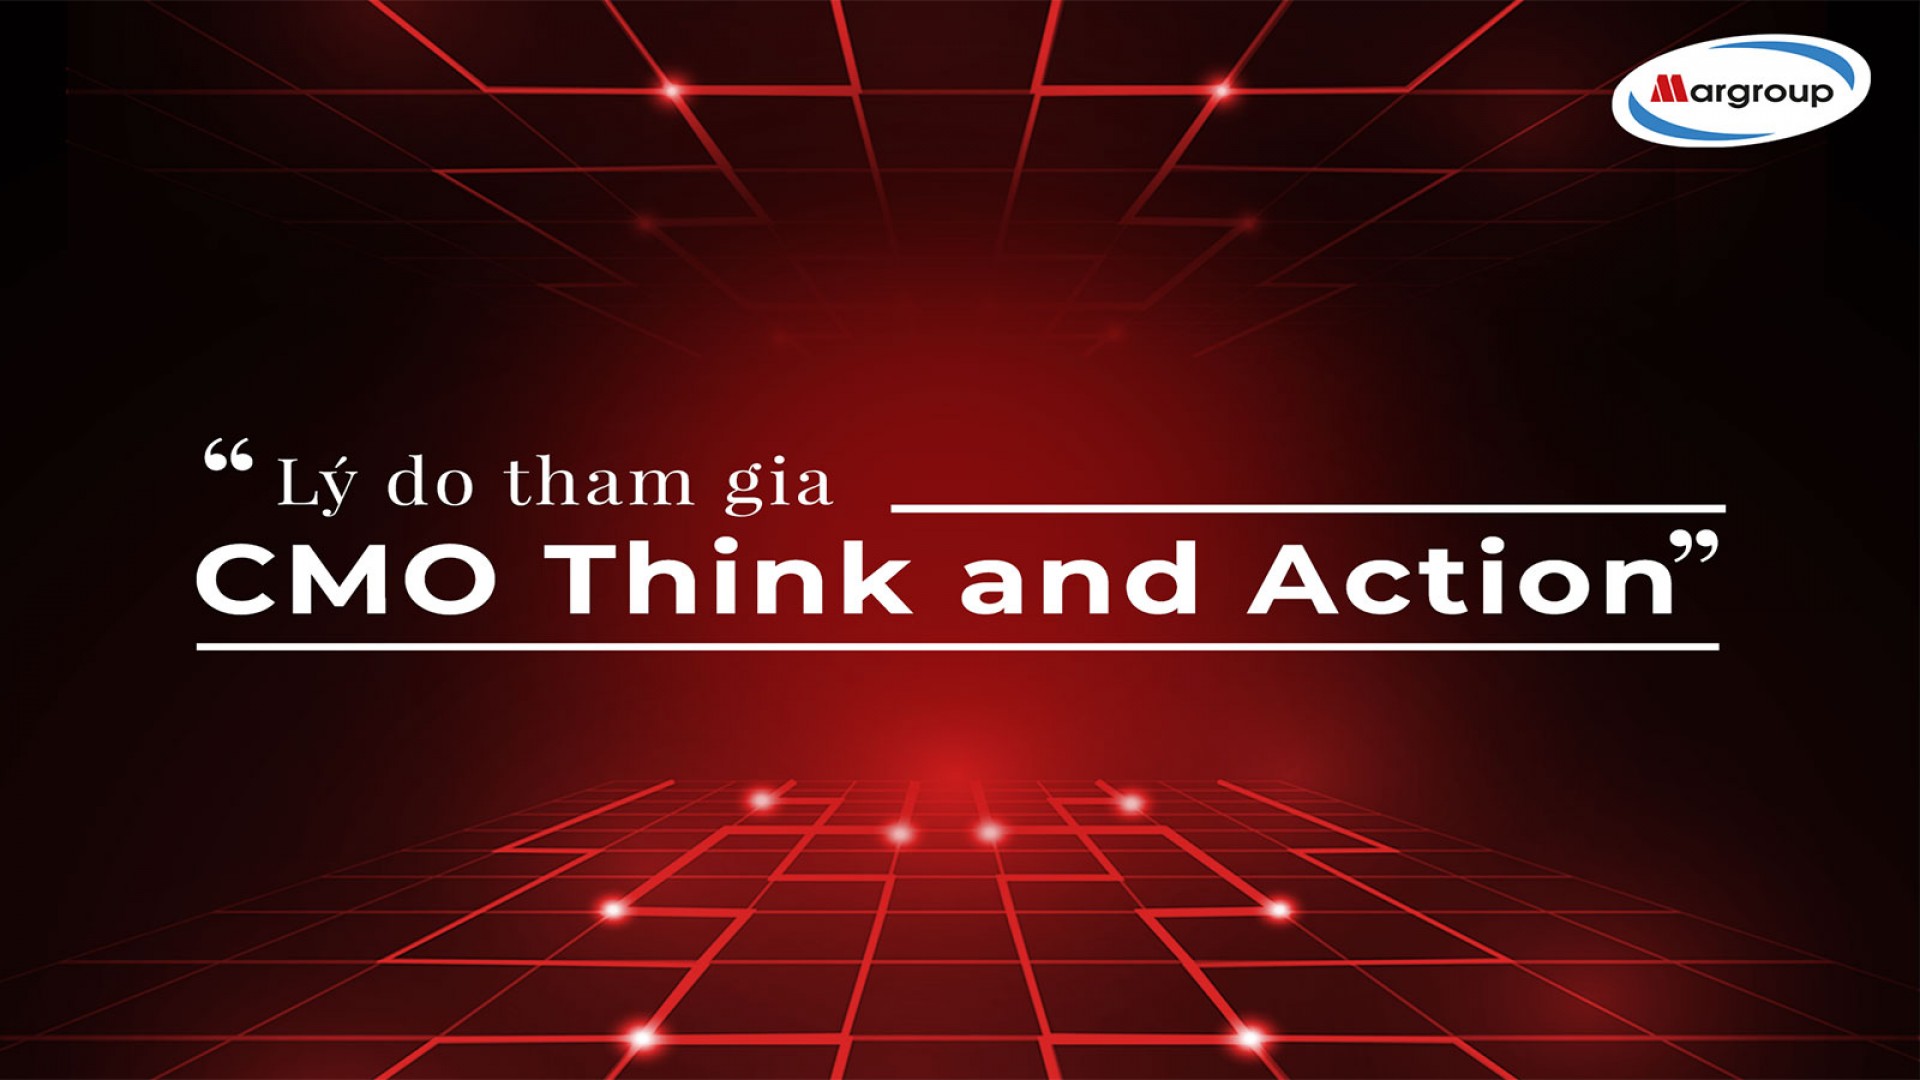 ĐẾN VỚI CMO THINK & ACTION 2019, BẠN SẼ NHẬN ĐƯỢC NHỮNG GÌ?